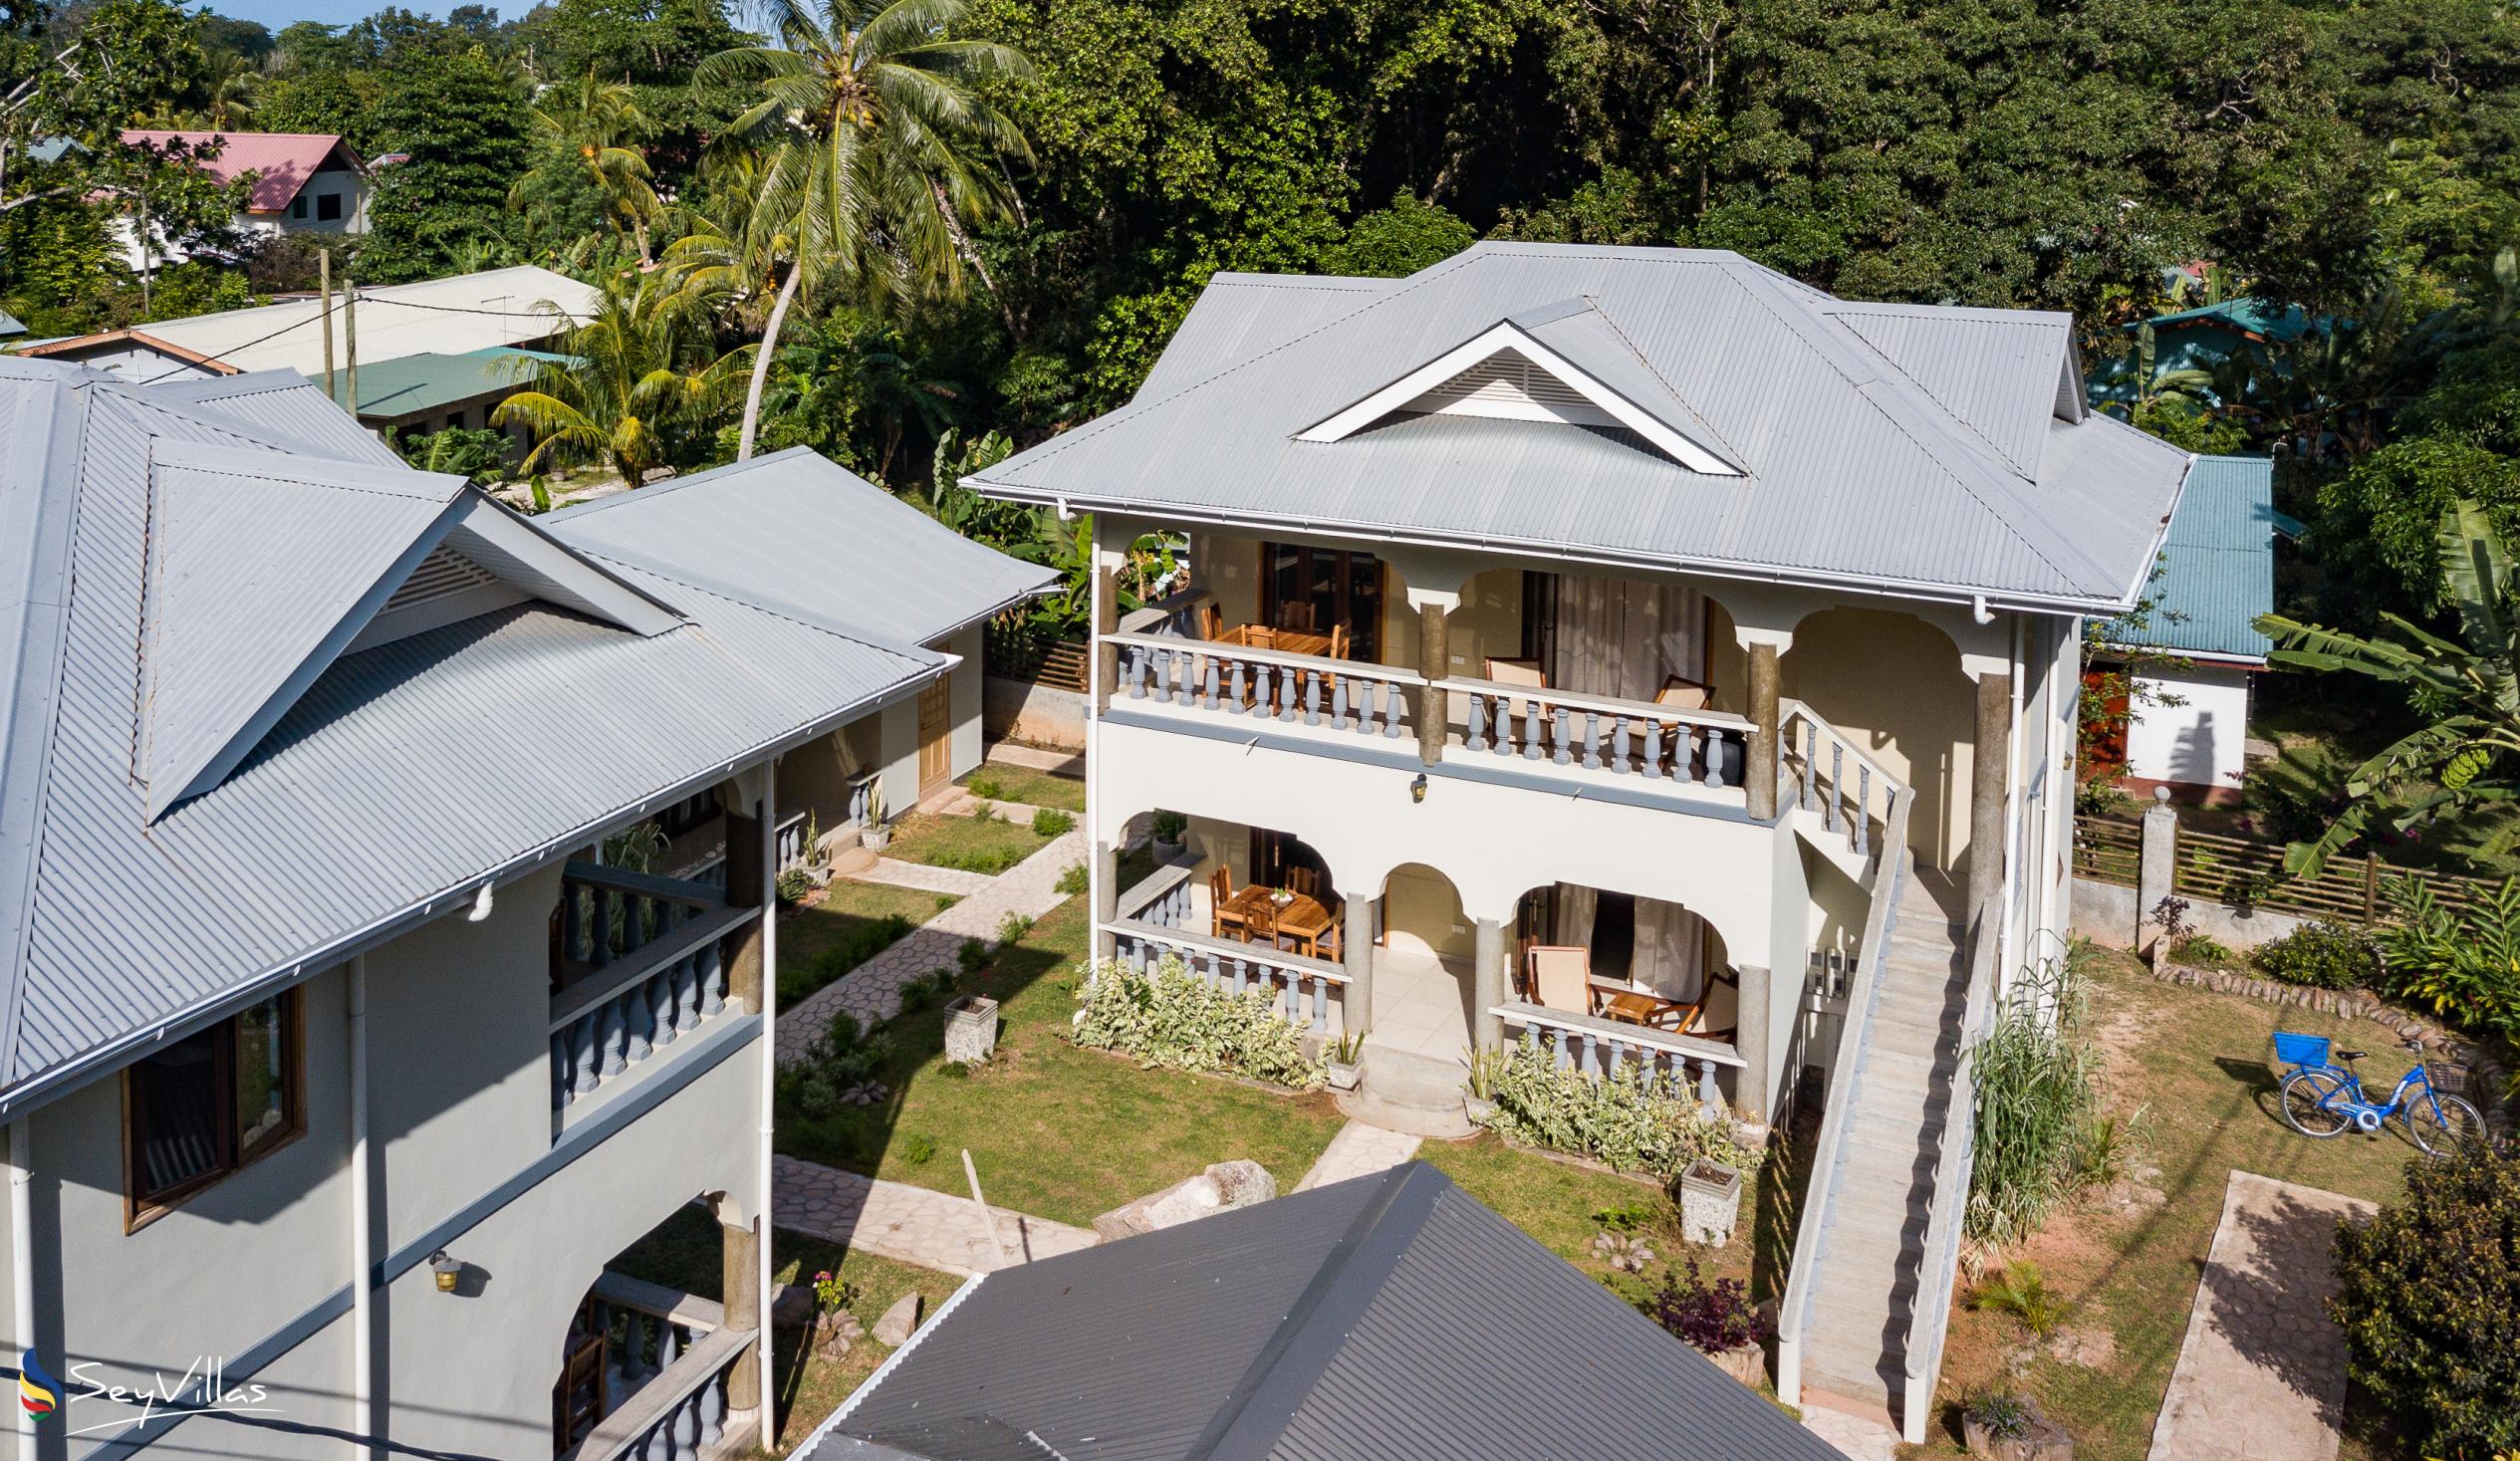 Foto 7: Maison Ed-Elle - Esterno - La Digue (Seychelles)